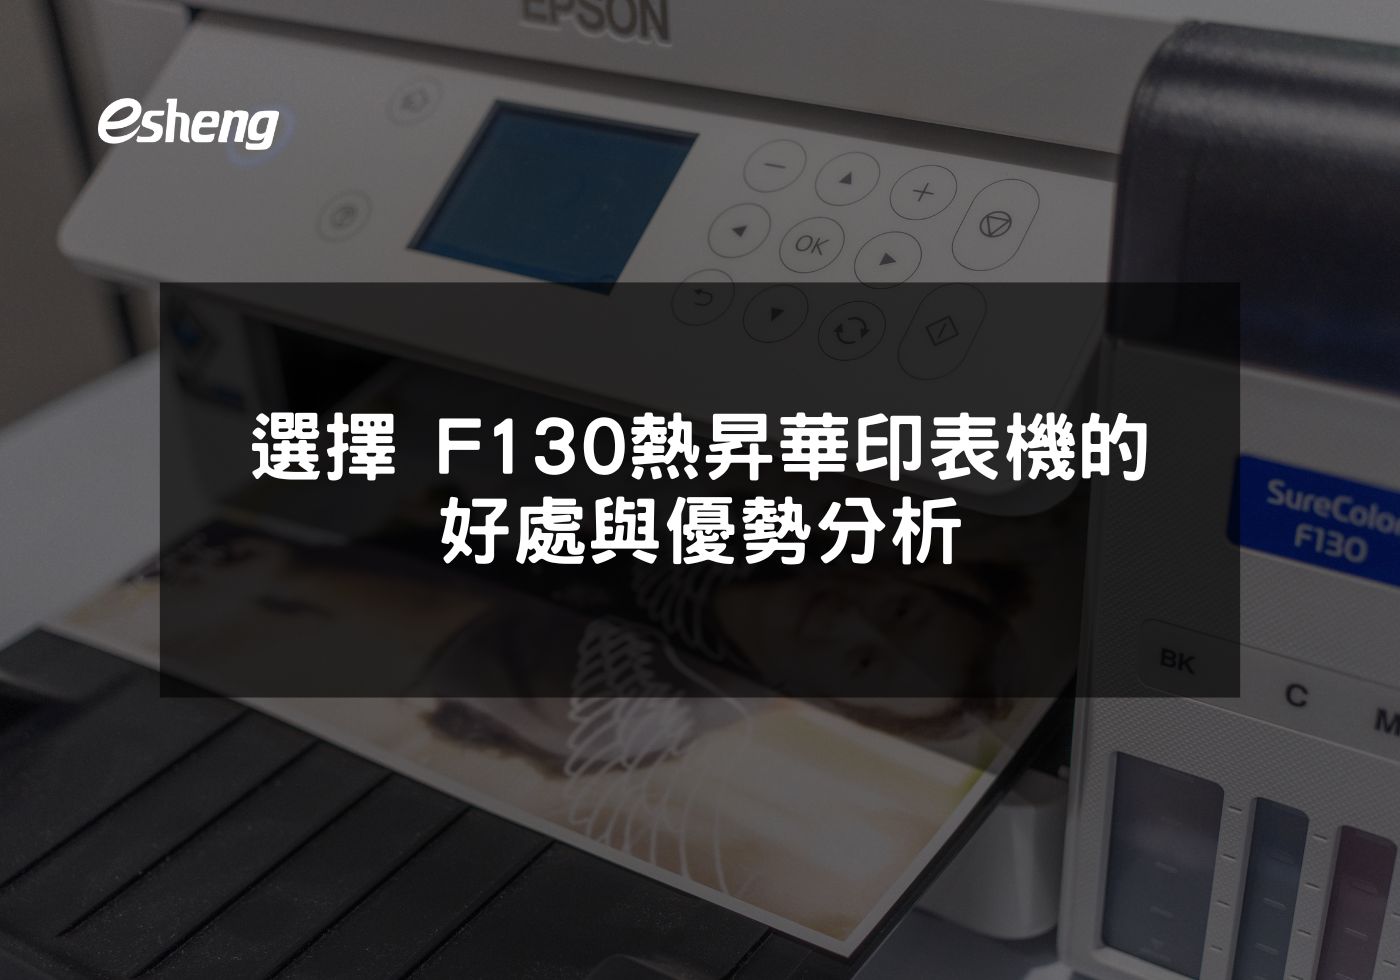 EPSON F130印表機打造高效能與精確印刷